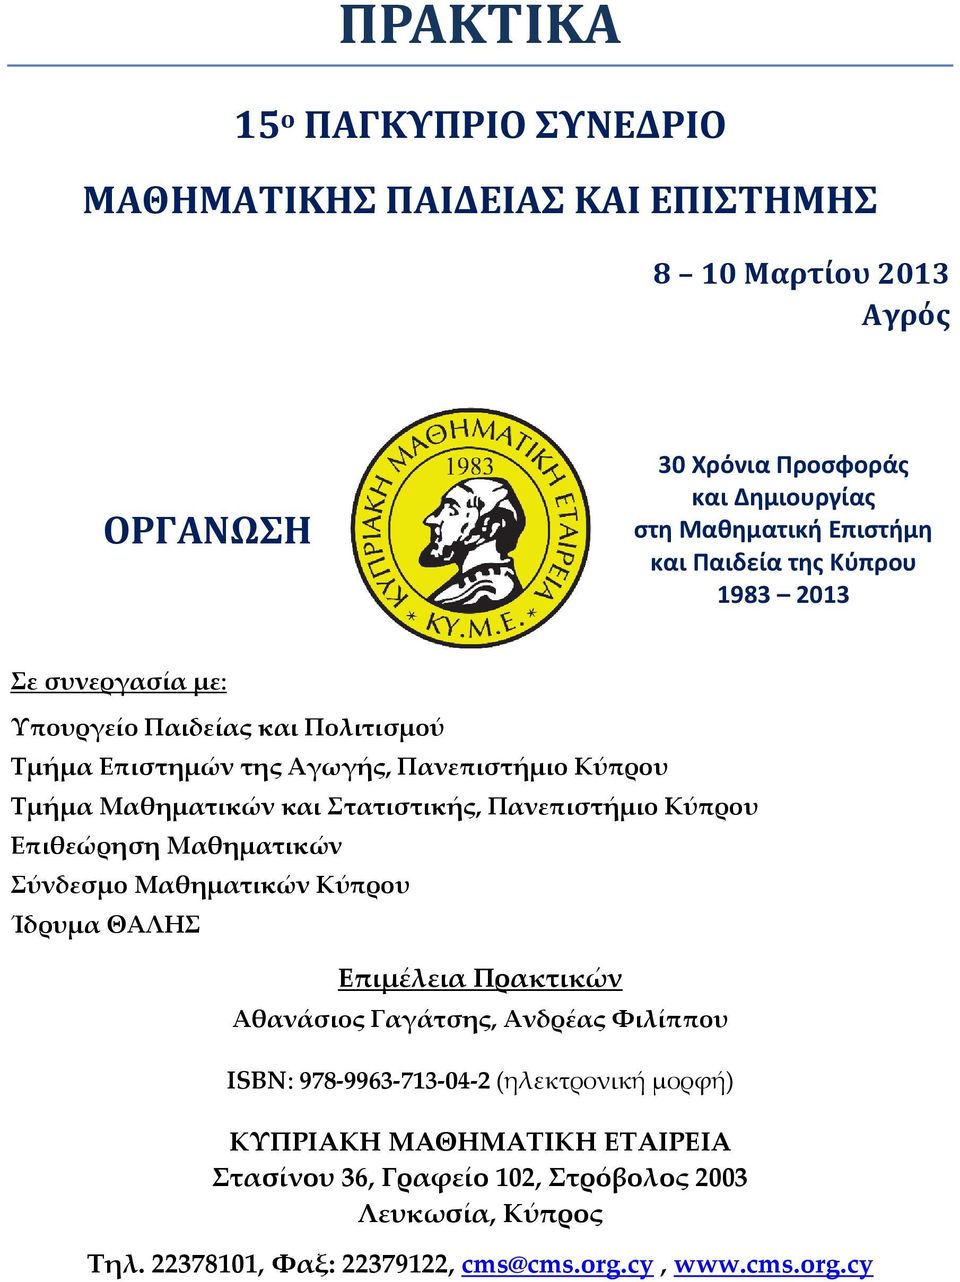 Πανεπιστήμιο Κύπρου Επιθεώρηση Μαθηματικών Σύνδεσμο Μαθηματικών Κύπρου Ίδρυμα ΘΑΛΗΣ Επιμέλεια Πρακτικών Αθανάσιος Γαγάτσης, Ανδρέας Φιλίππου ISBN: 978-9963-713-04-2